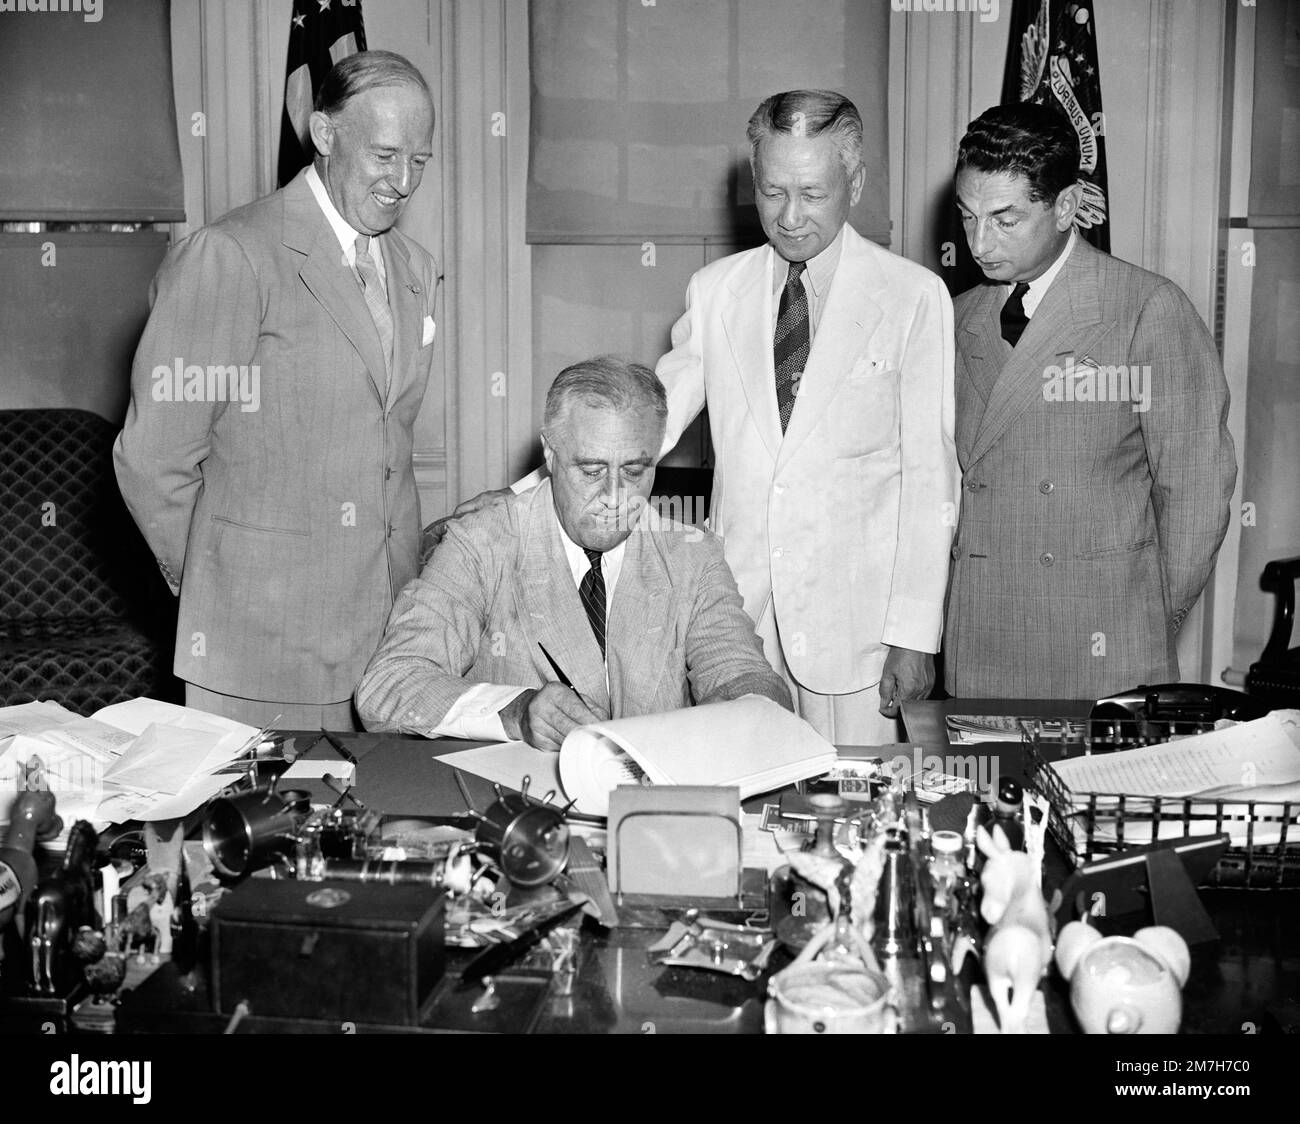 USA Präsident Franklin Roosevelt unterzeichnet Gesetzesentwurf, der die wirtschaftliche Anpassung des philippinischen Commonwealth an den Unabhängigkeitsstatus erleichterte, Washington, D.C., USA, Harris & Ewing 7. August 1939 Stockfoto